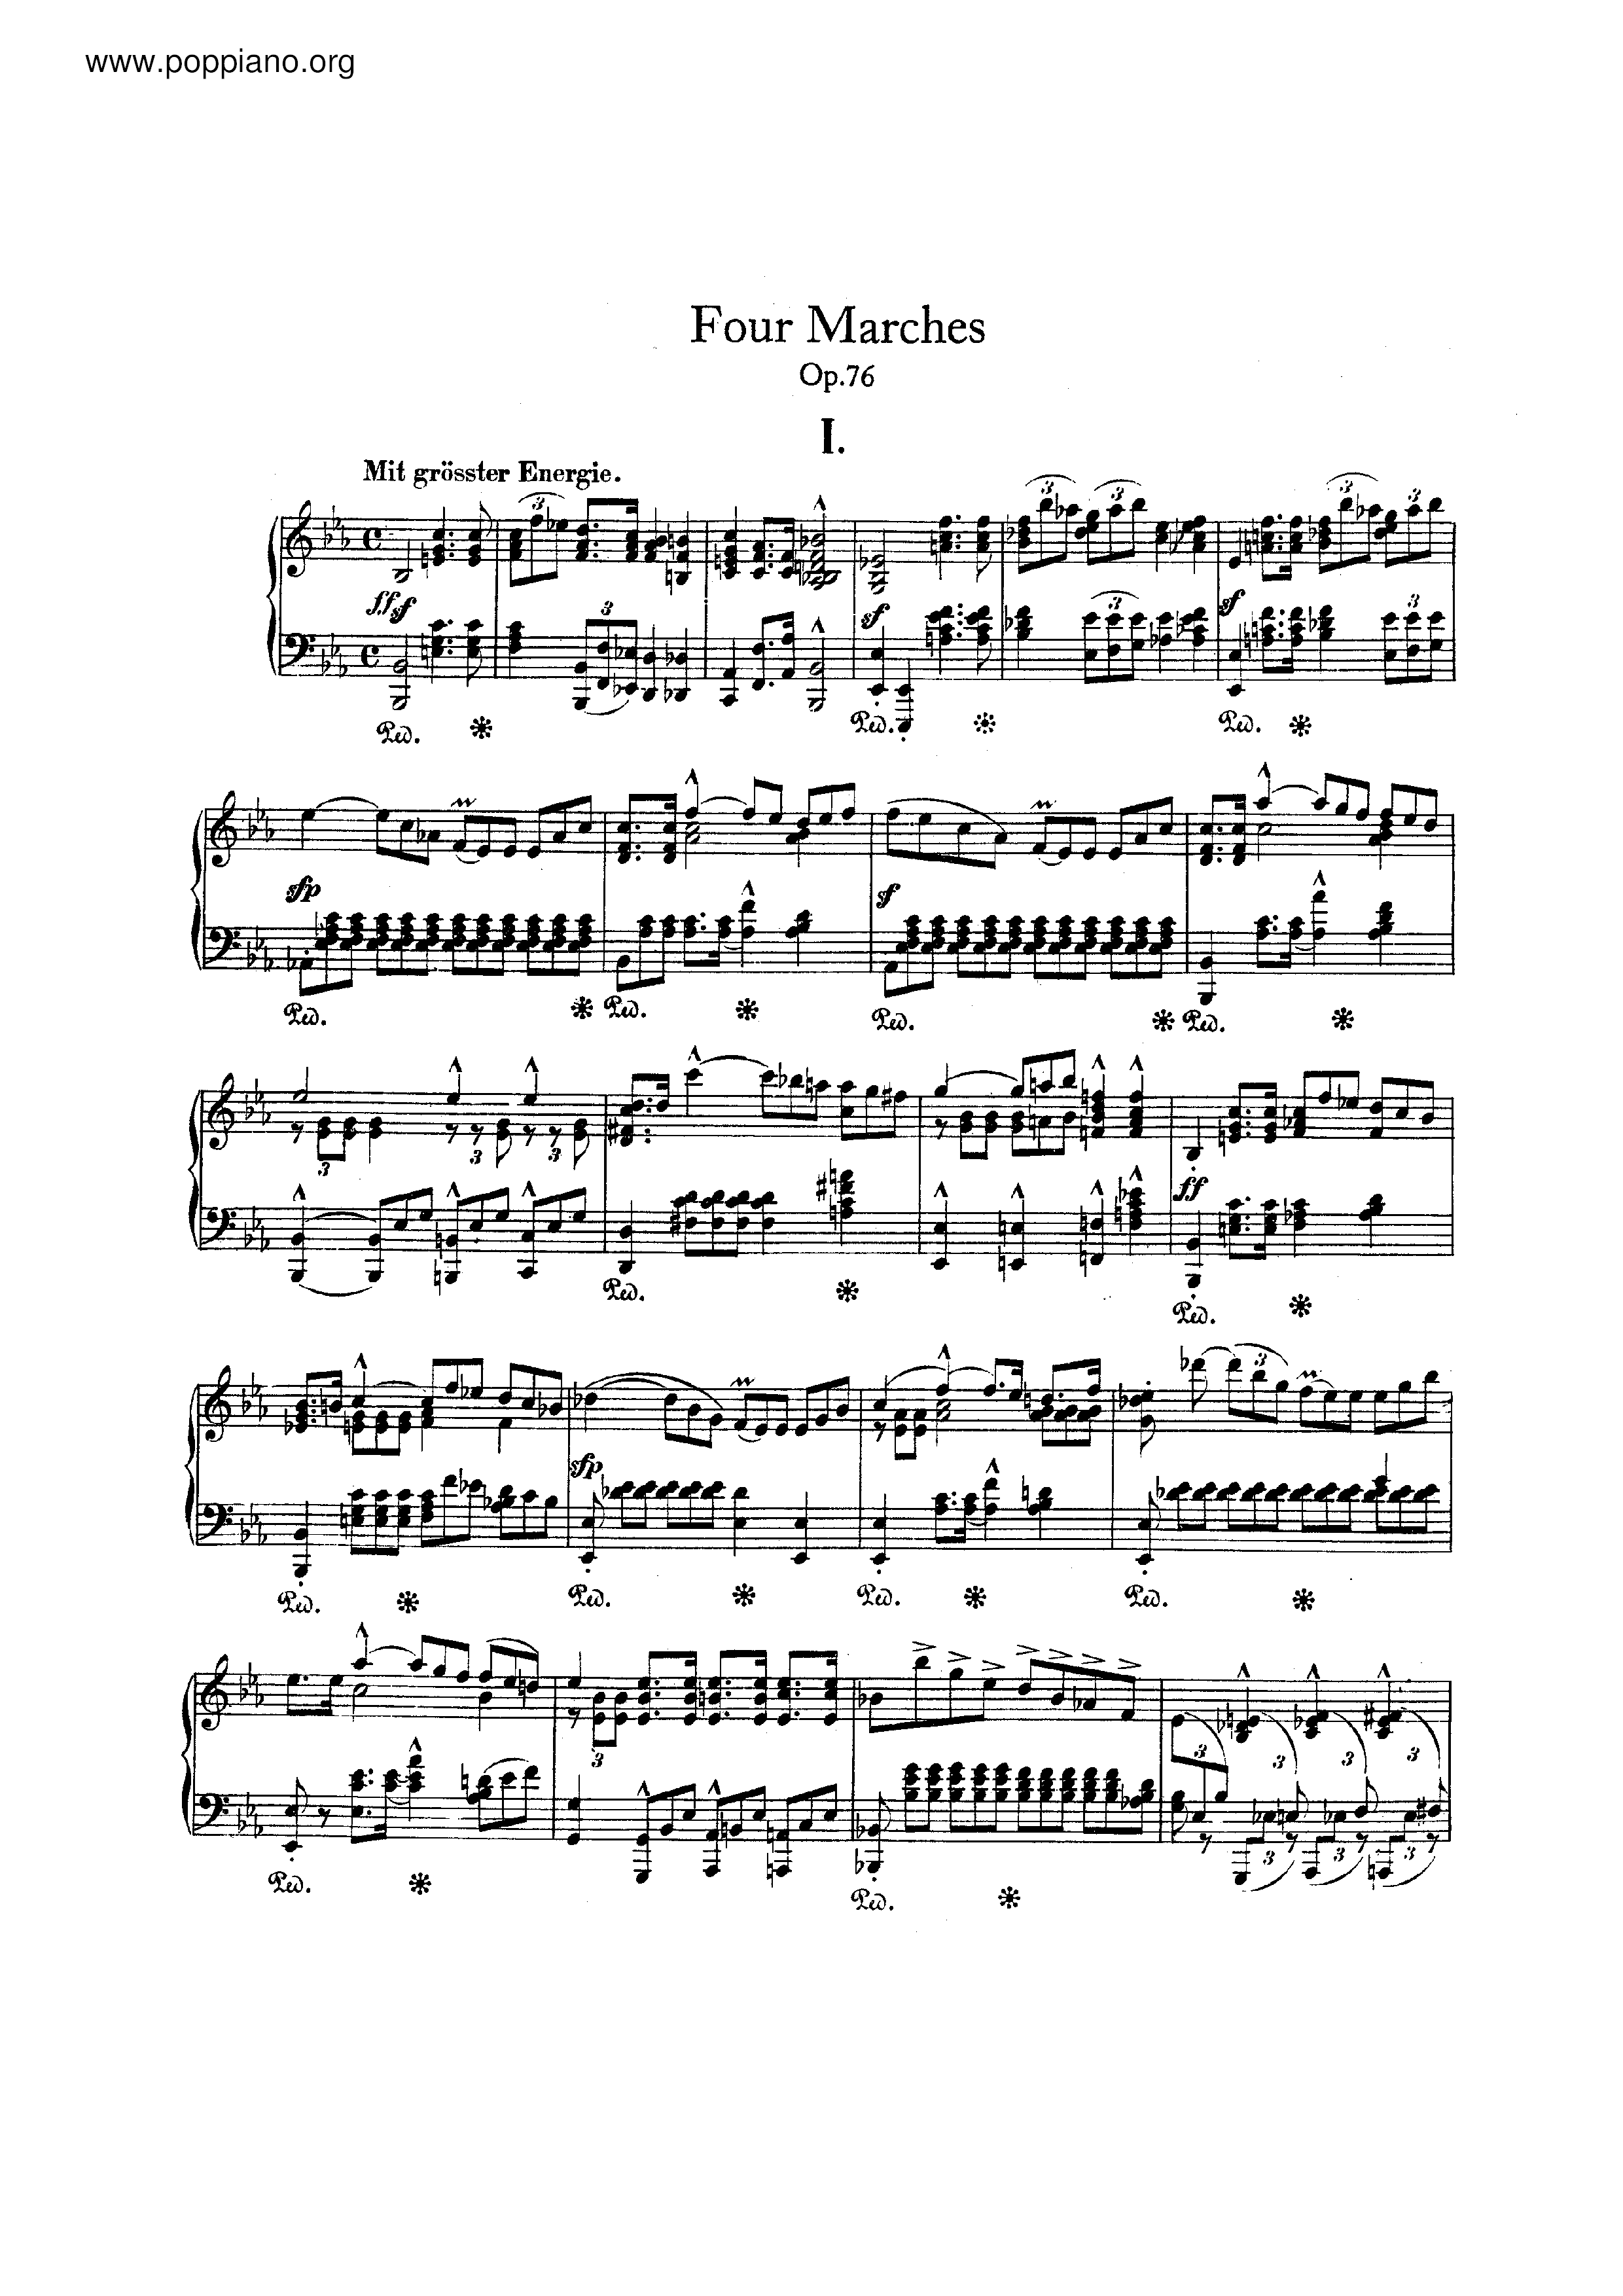 4 Marches, Op.76 Score